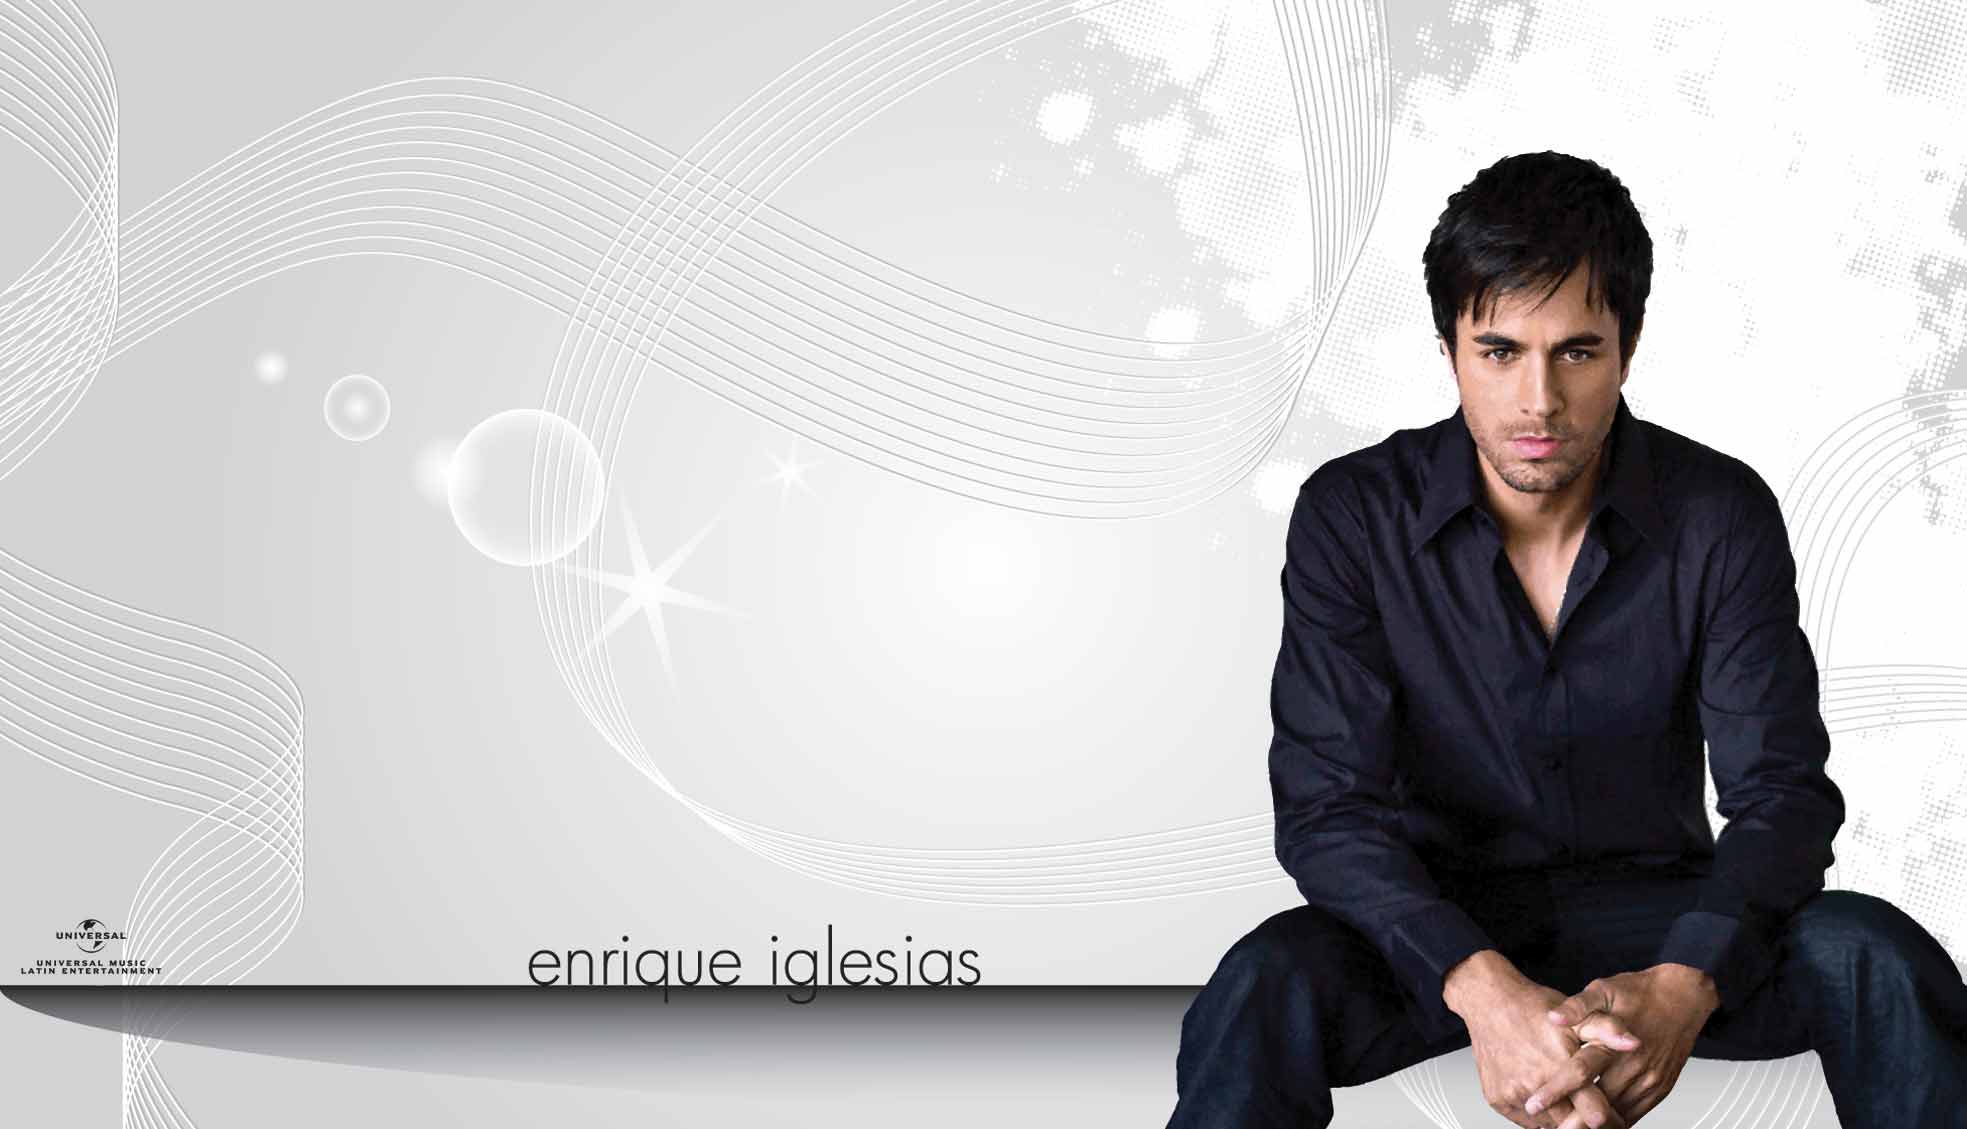 Enrique Iglesias Wallpaper. Universal Music Latin Entertainment